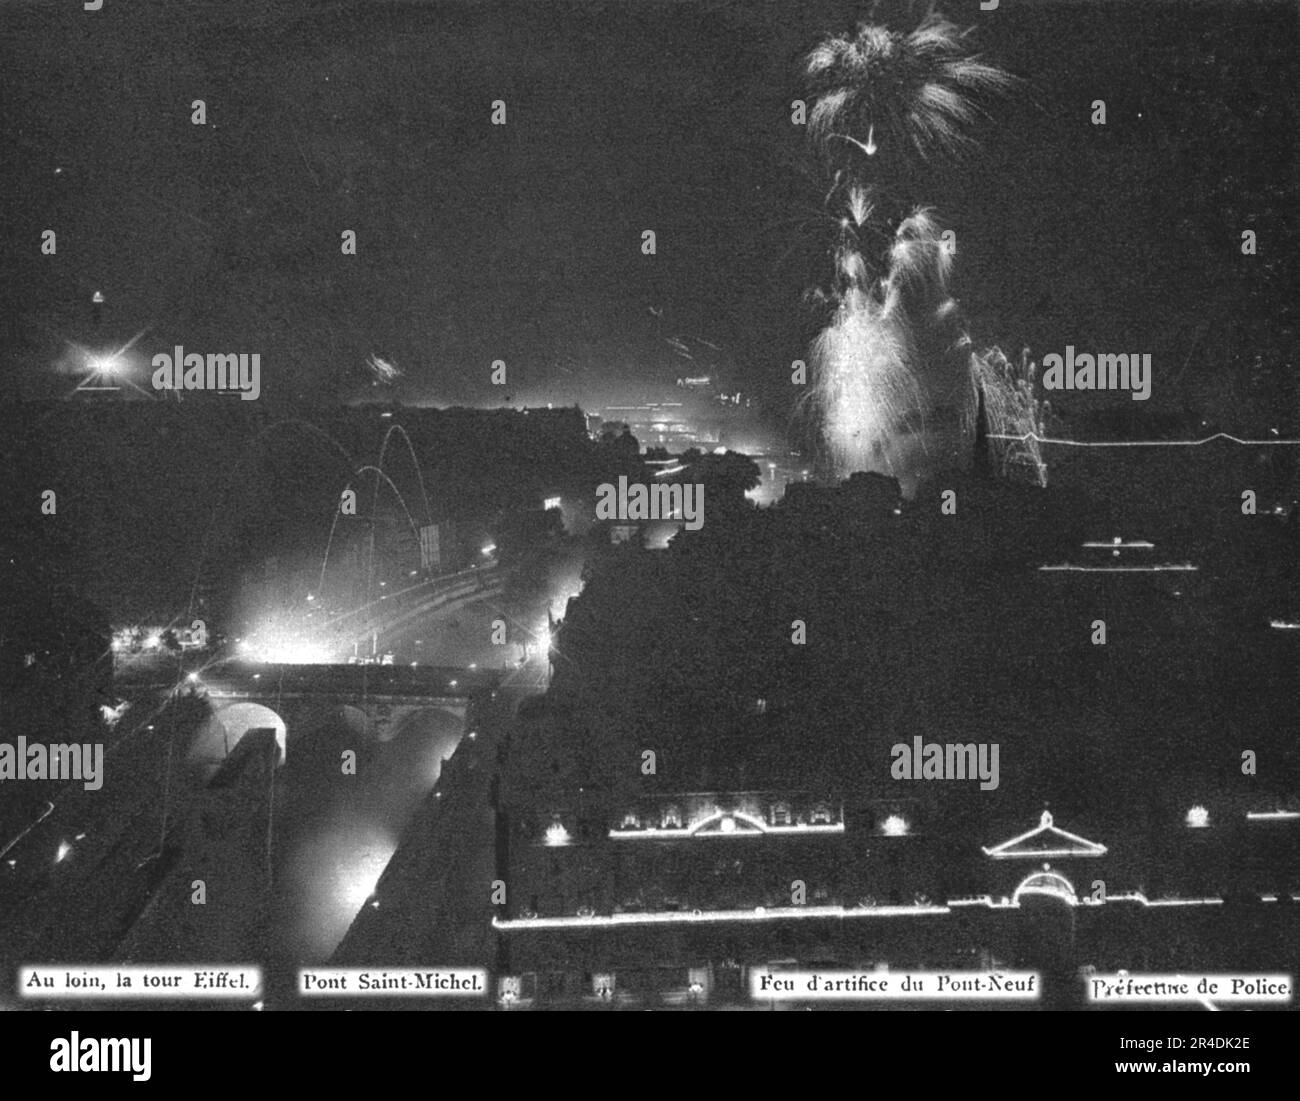 'Le jour de gloire; panorama de Paris illuminine le soir de 14 juillet 1919, vu d'une des tours de Notre-Dame', 1919. From "l'Album de la Guerre 1914-1919, Volume 2" [l'Illustration, Paris, 1924]. Foto Stock